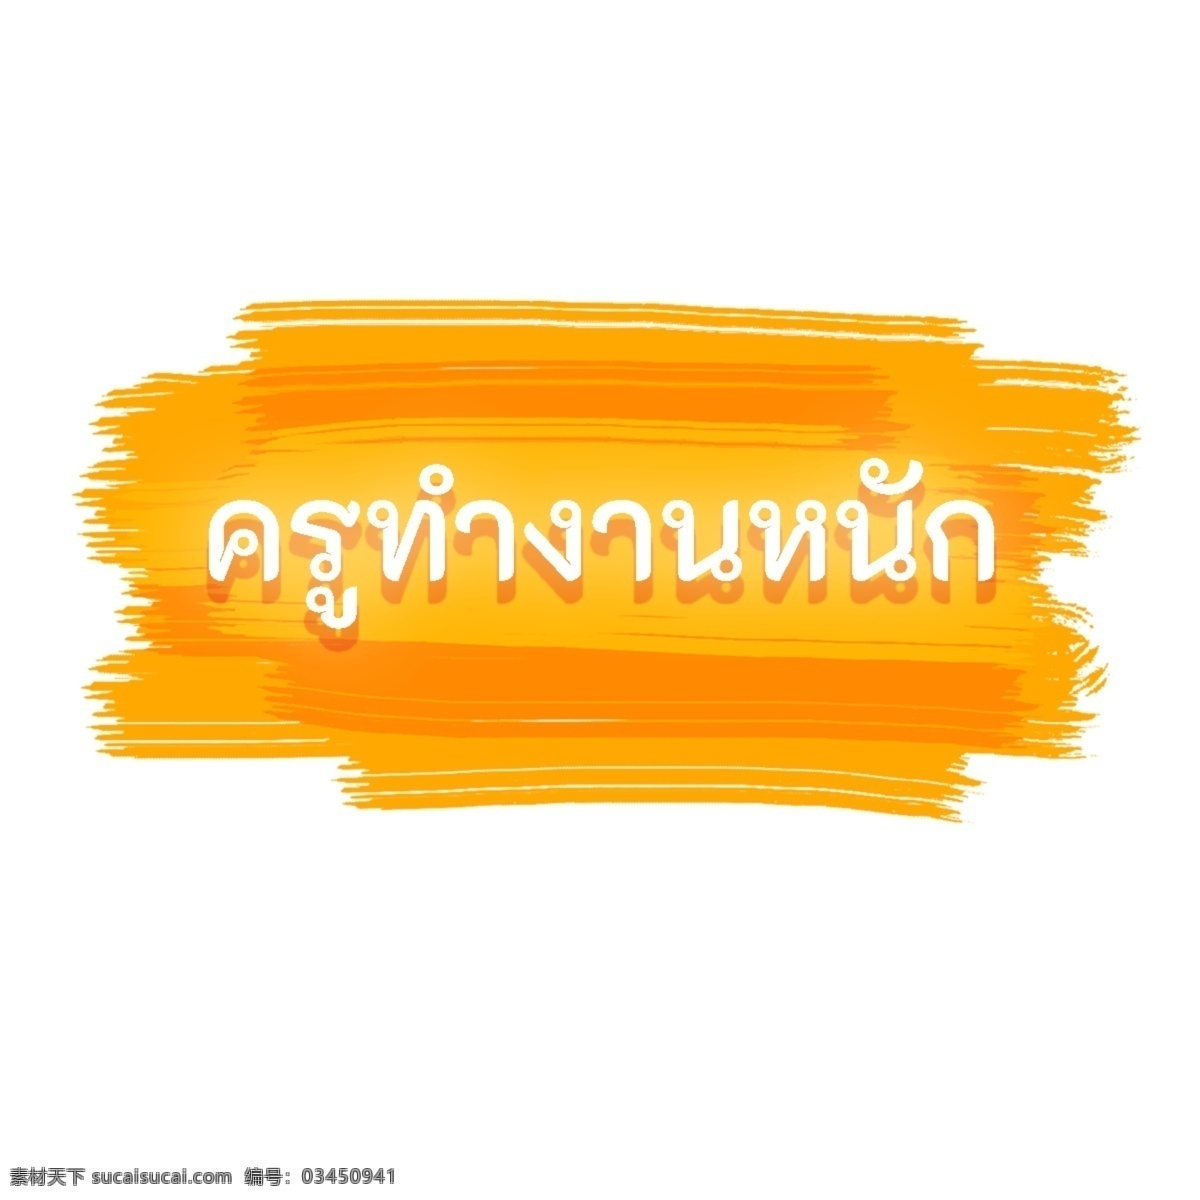 泰国 文字 字体 黄色 白 老师 努力 工作 老师努力工作 白色 橙黄色